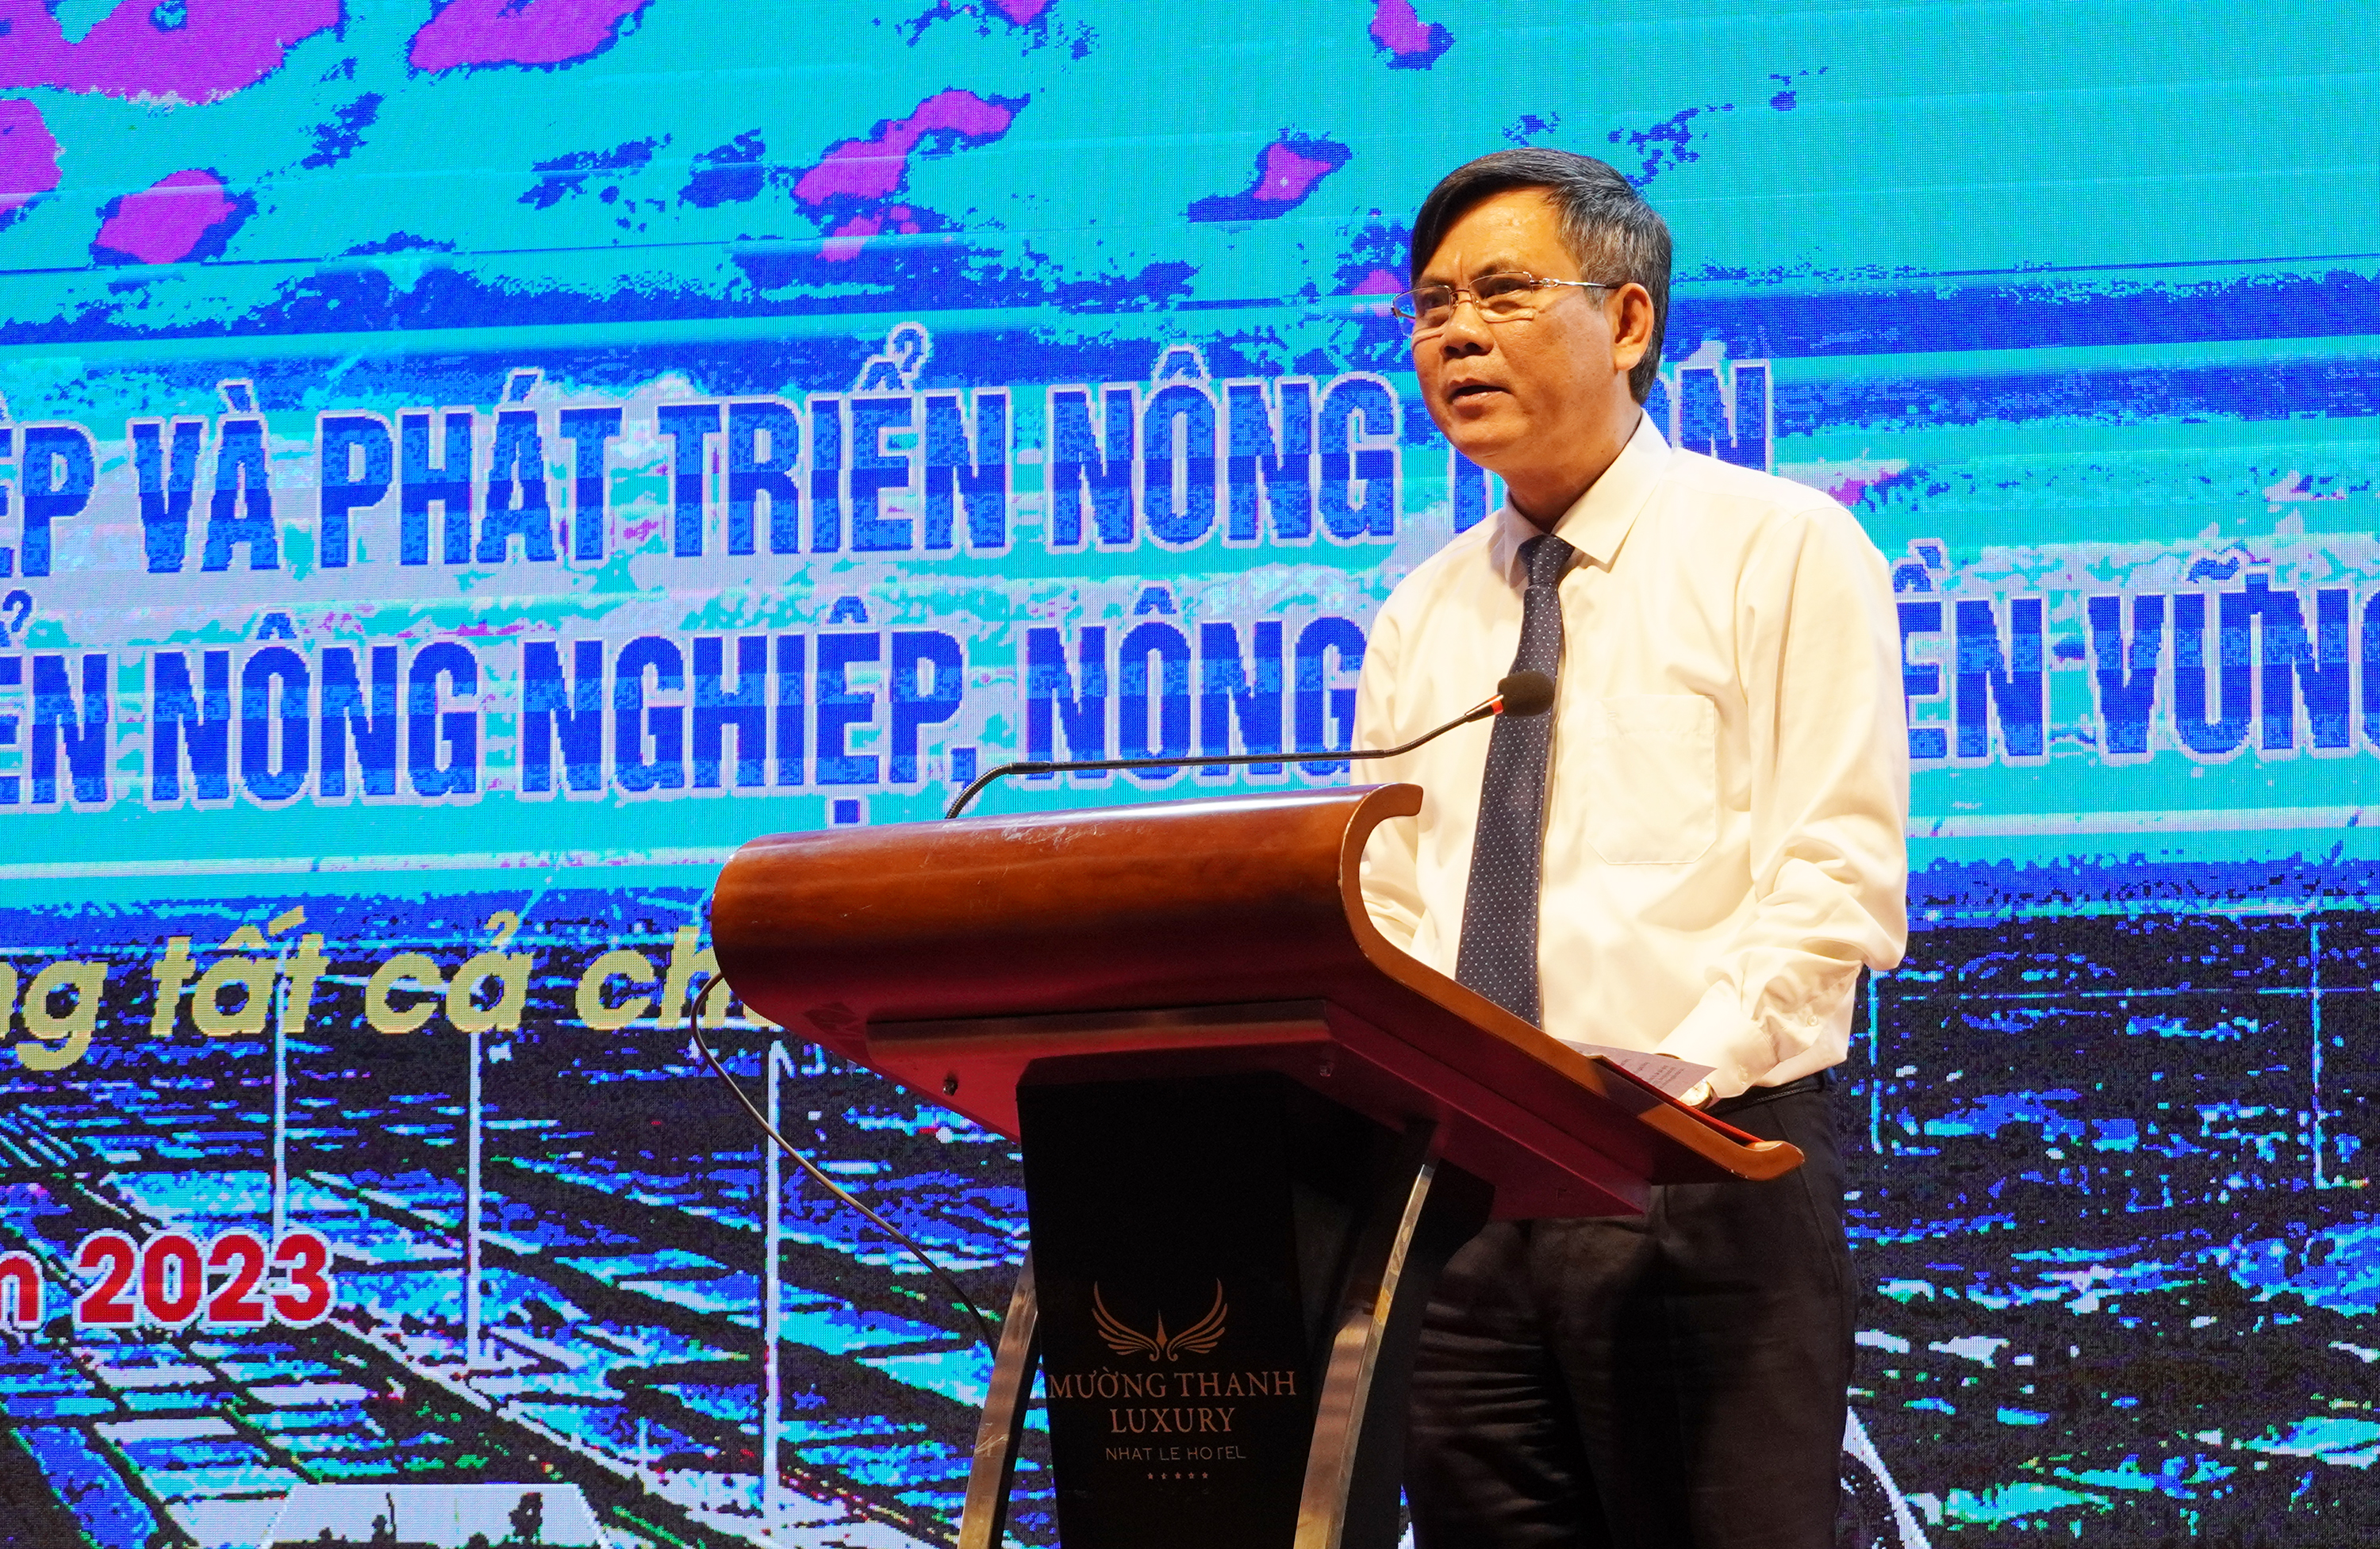 Đồng chí Phó Bí thư Tỉnh ủy, Chủ tịch UBND tỉnh Trần Thắng phát biểu tham luận tại hội nghị.